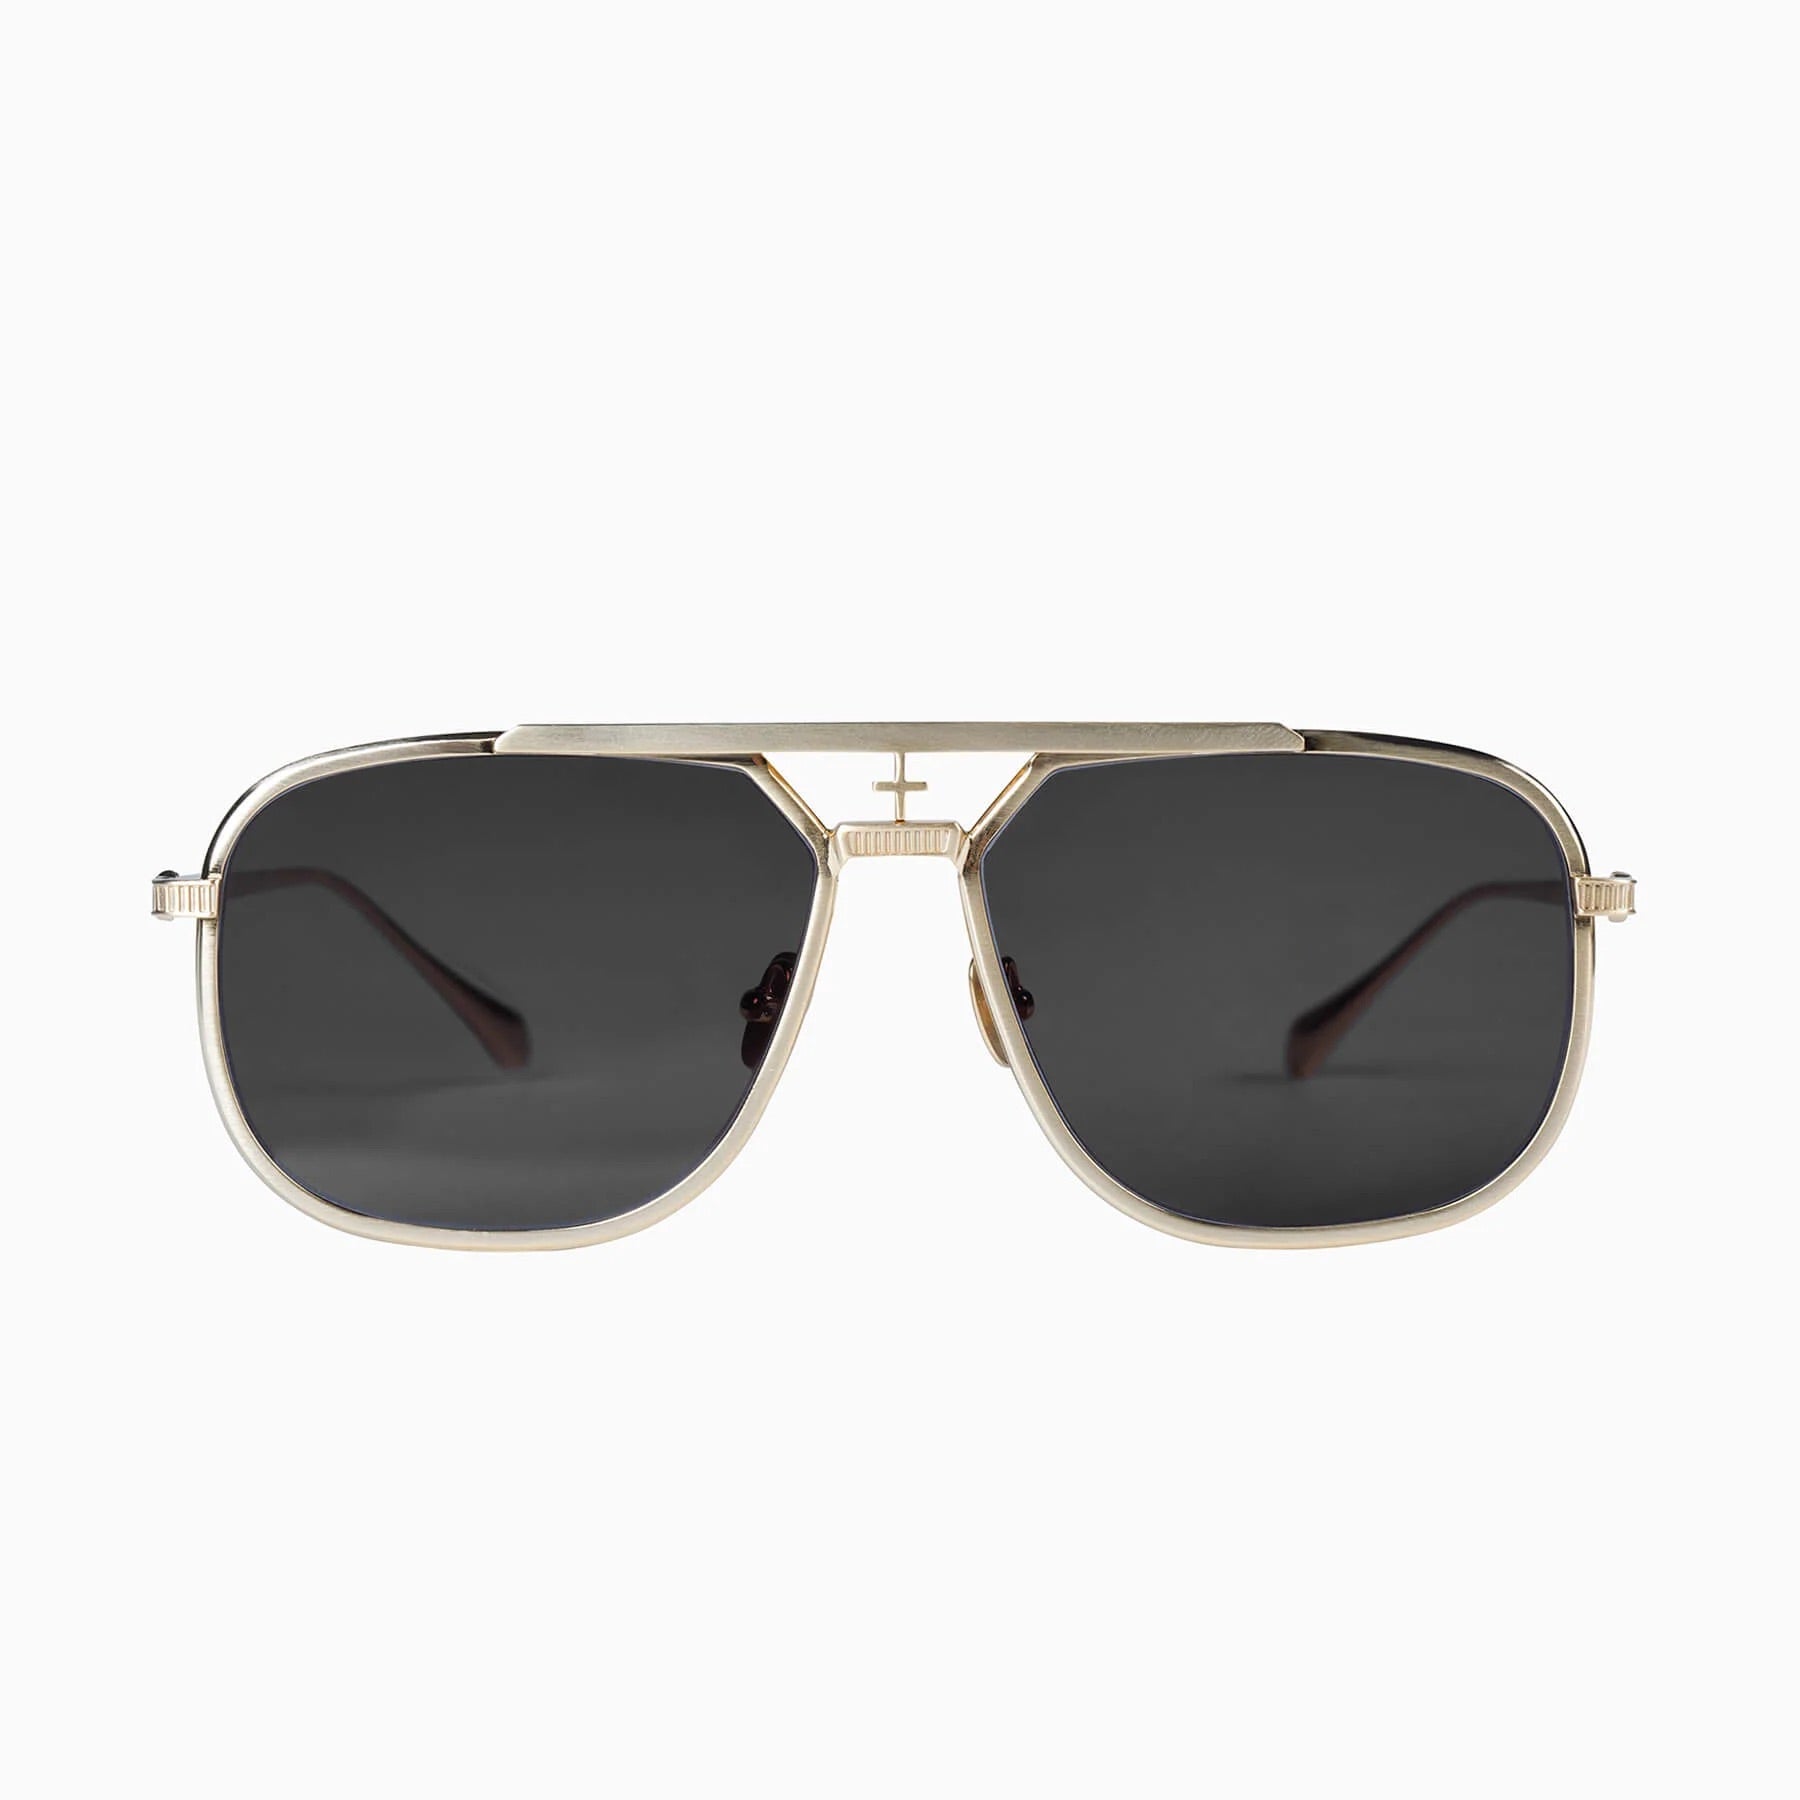 Capita | Sunglasses - Brushed Gold Titanium / Black Lens